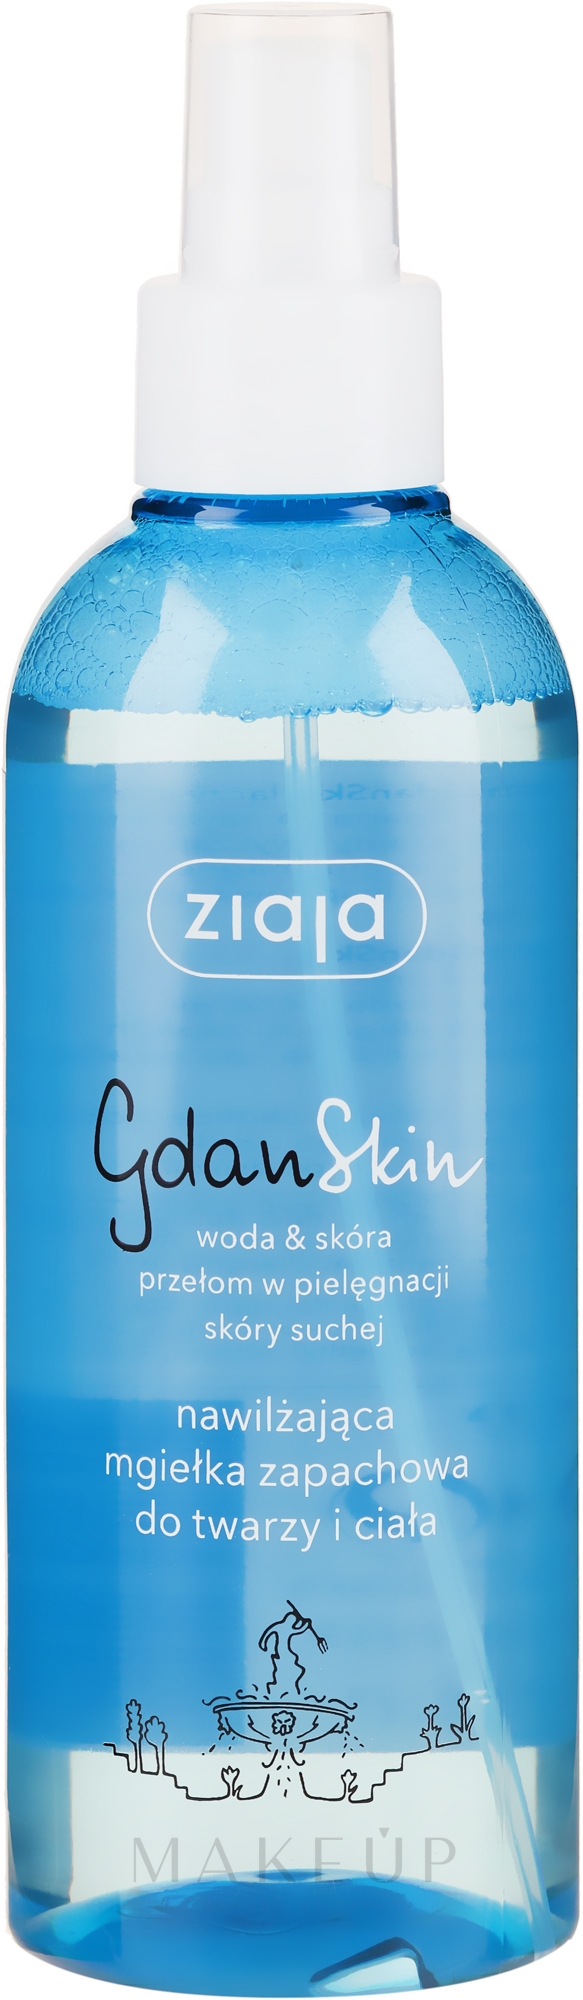 Feuchtigkeitsspendender Duftspray für Gesicht und Körper - Ziaja GdanSkin — Foto 200 ml